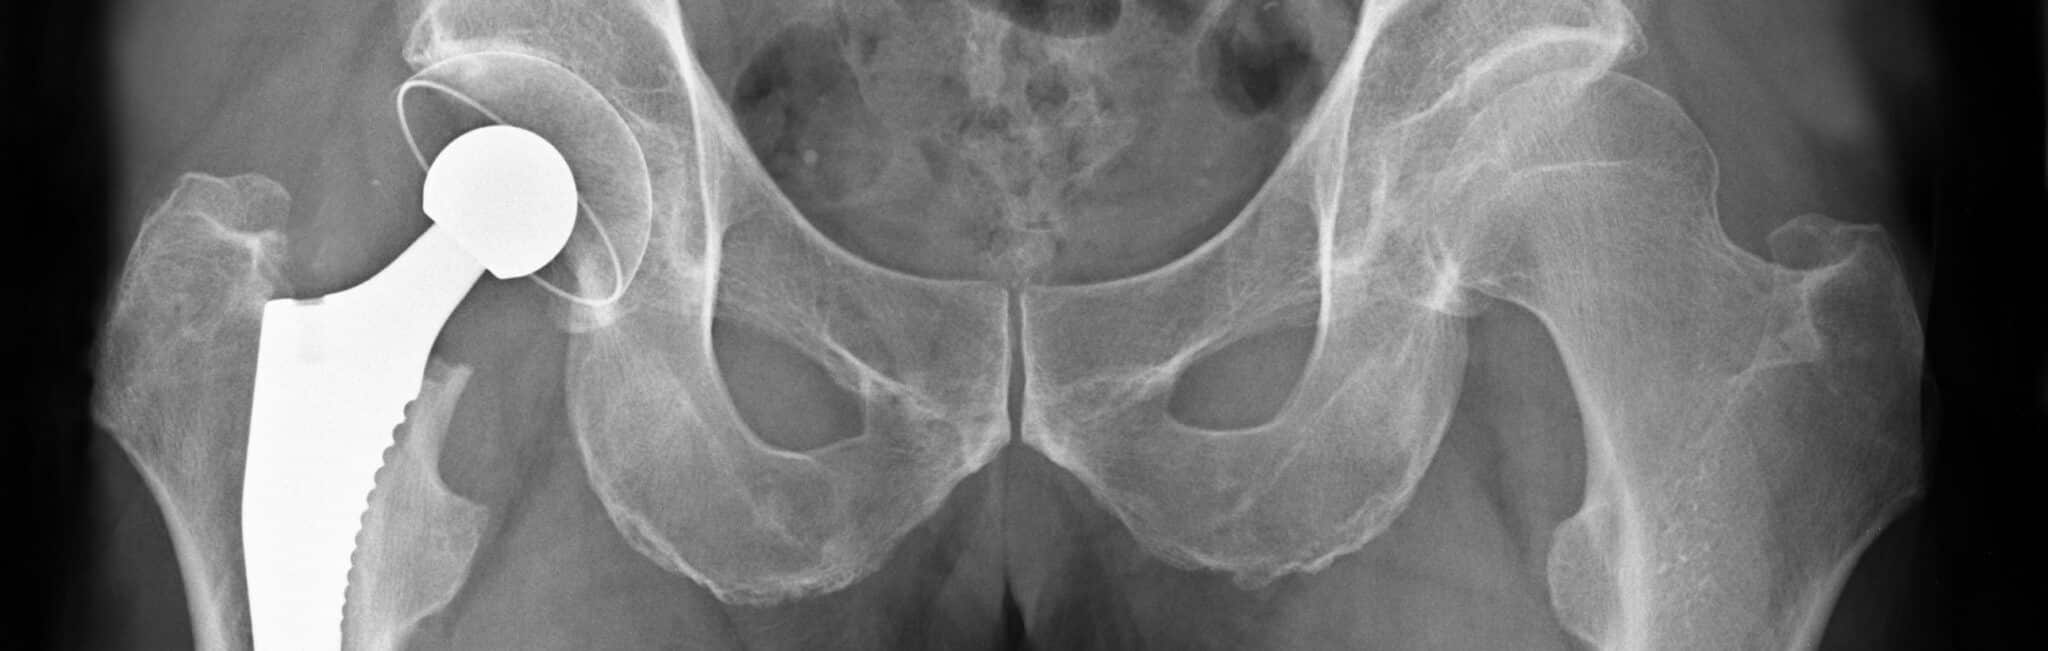 Quels sont les symptômes d’un descellement de prothèse de hanche ? | Dr Paillard | Paris